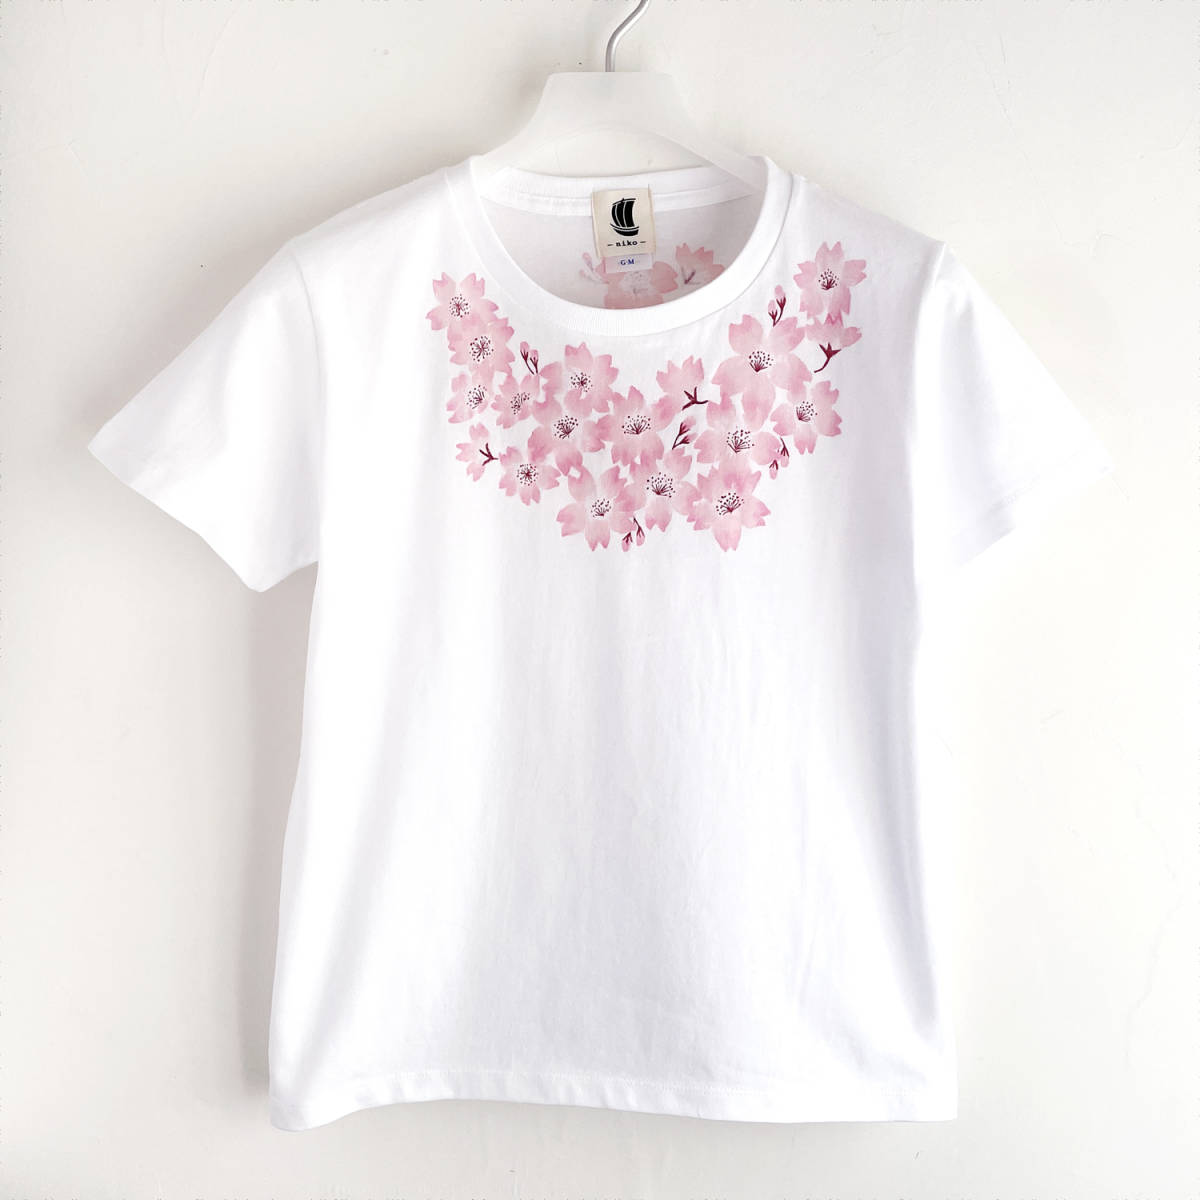 여성용 티셔츠, L사이즈, 하얀색, 코사지 벚꽃무늬 티셔츠, 핸드페인팅 티셔츠, L사이즈, 목이 둥글게 파인 옷, 무늬가 있는